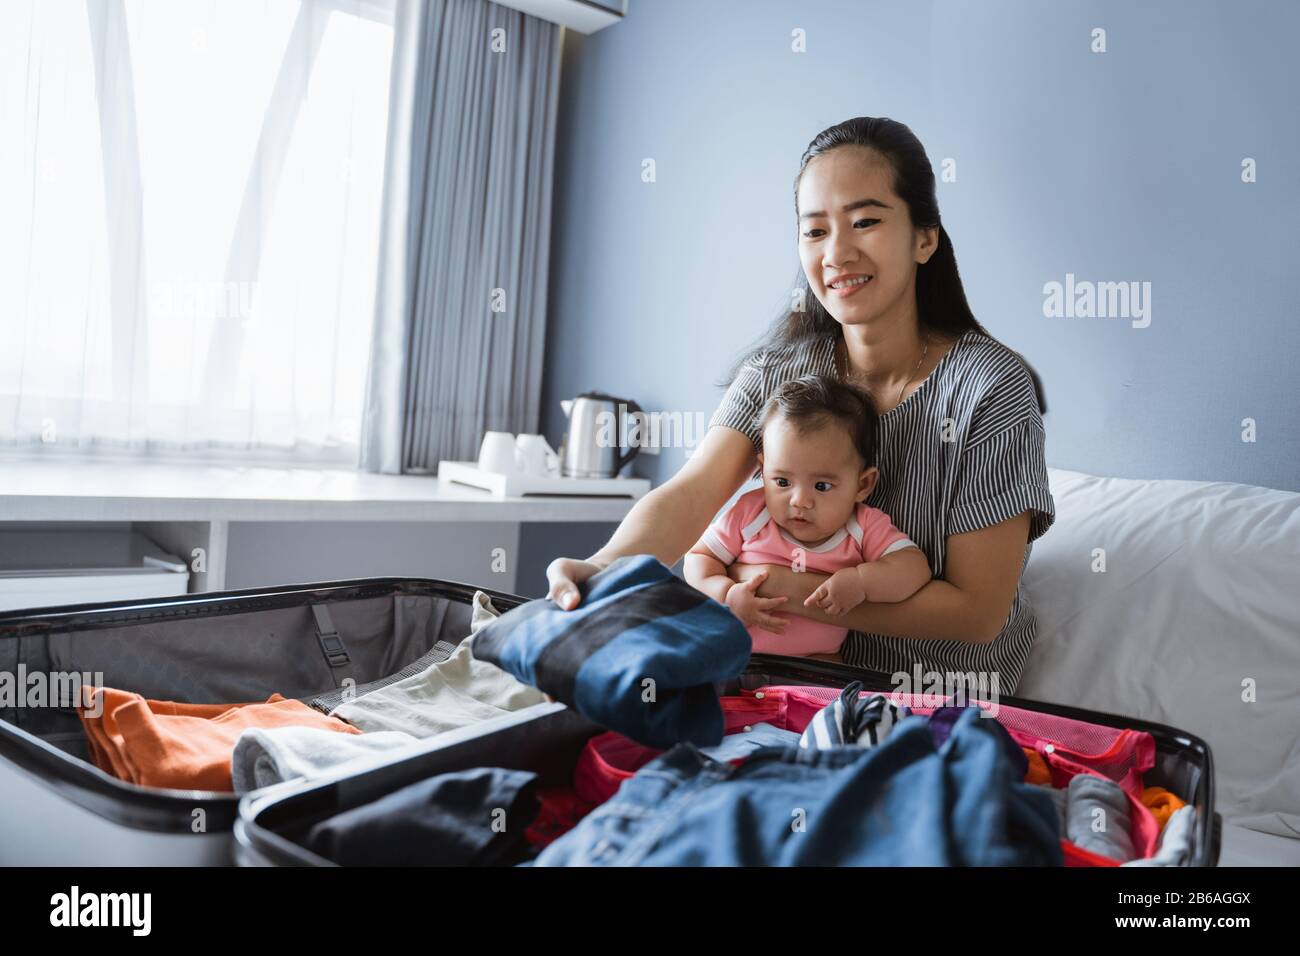 la mère asiatique est assise sur les genoux de sa fille tout en préparant des vêtements à mettre dans la valise Banque D'Images